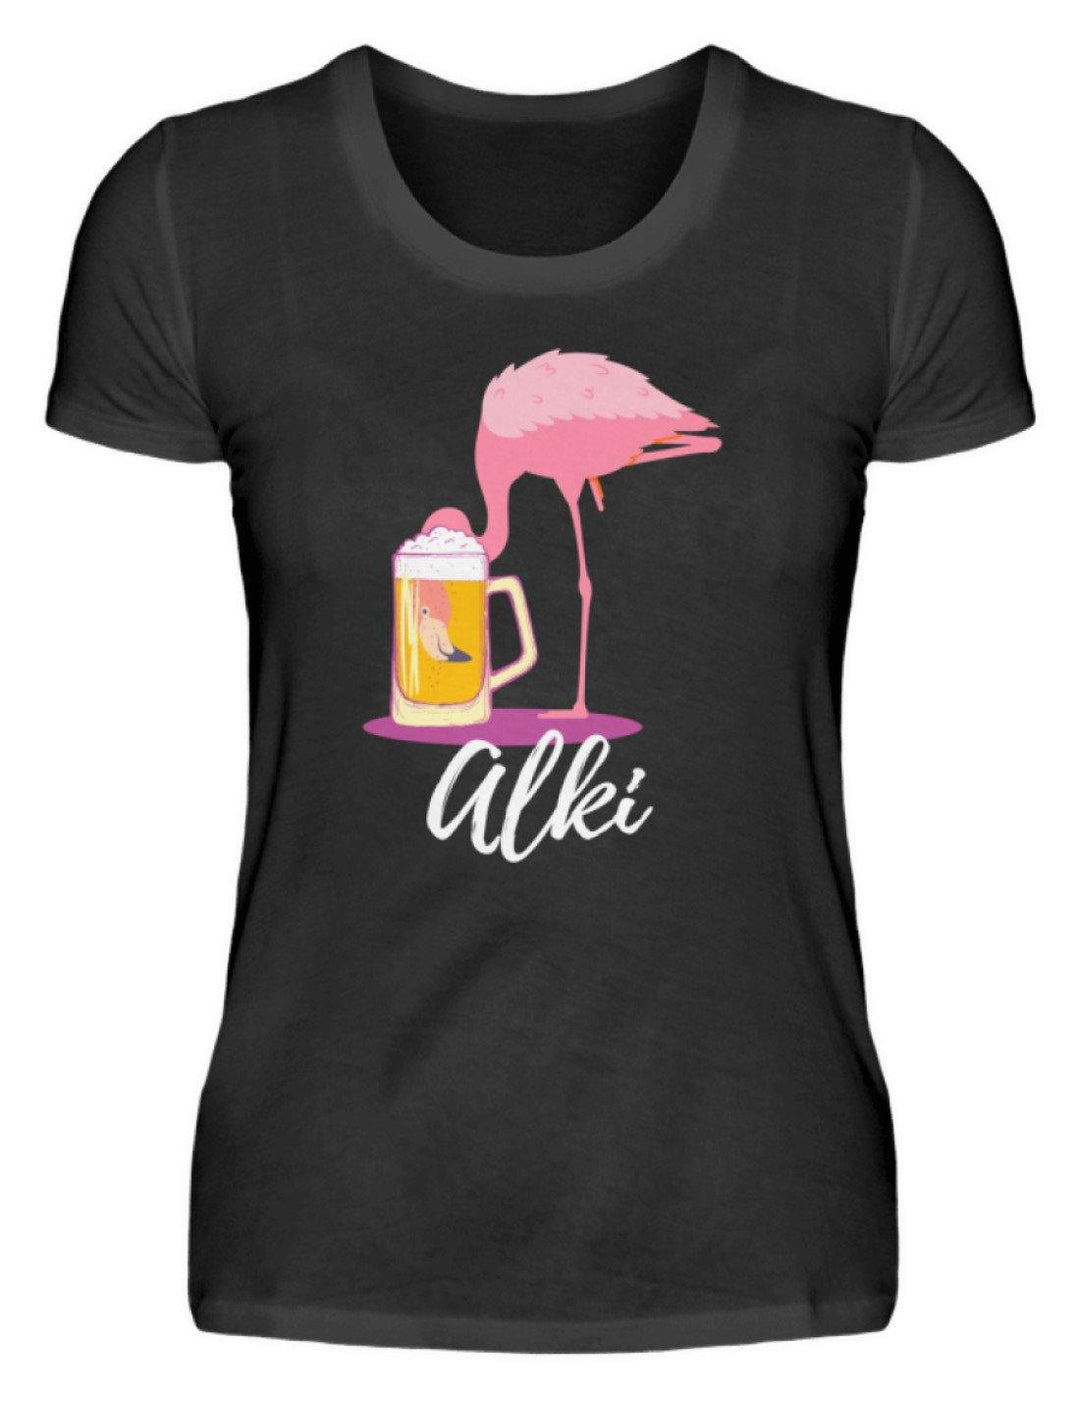 Flamingo Alki - Words on Shirt  - Damenshirt - Words on Shirts Sag es mit dem Mittelfinger Shirts Hoodies Sweatshirt Taschen Gymsack Spruch Sprüche Statement